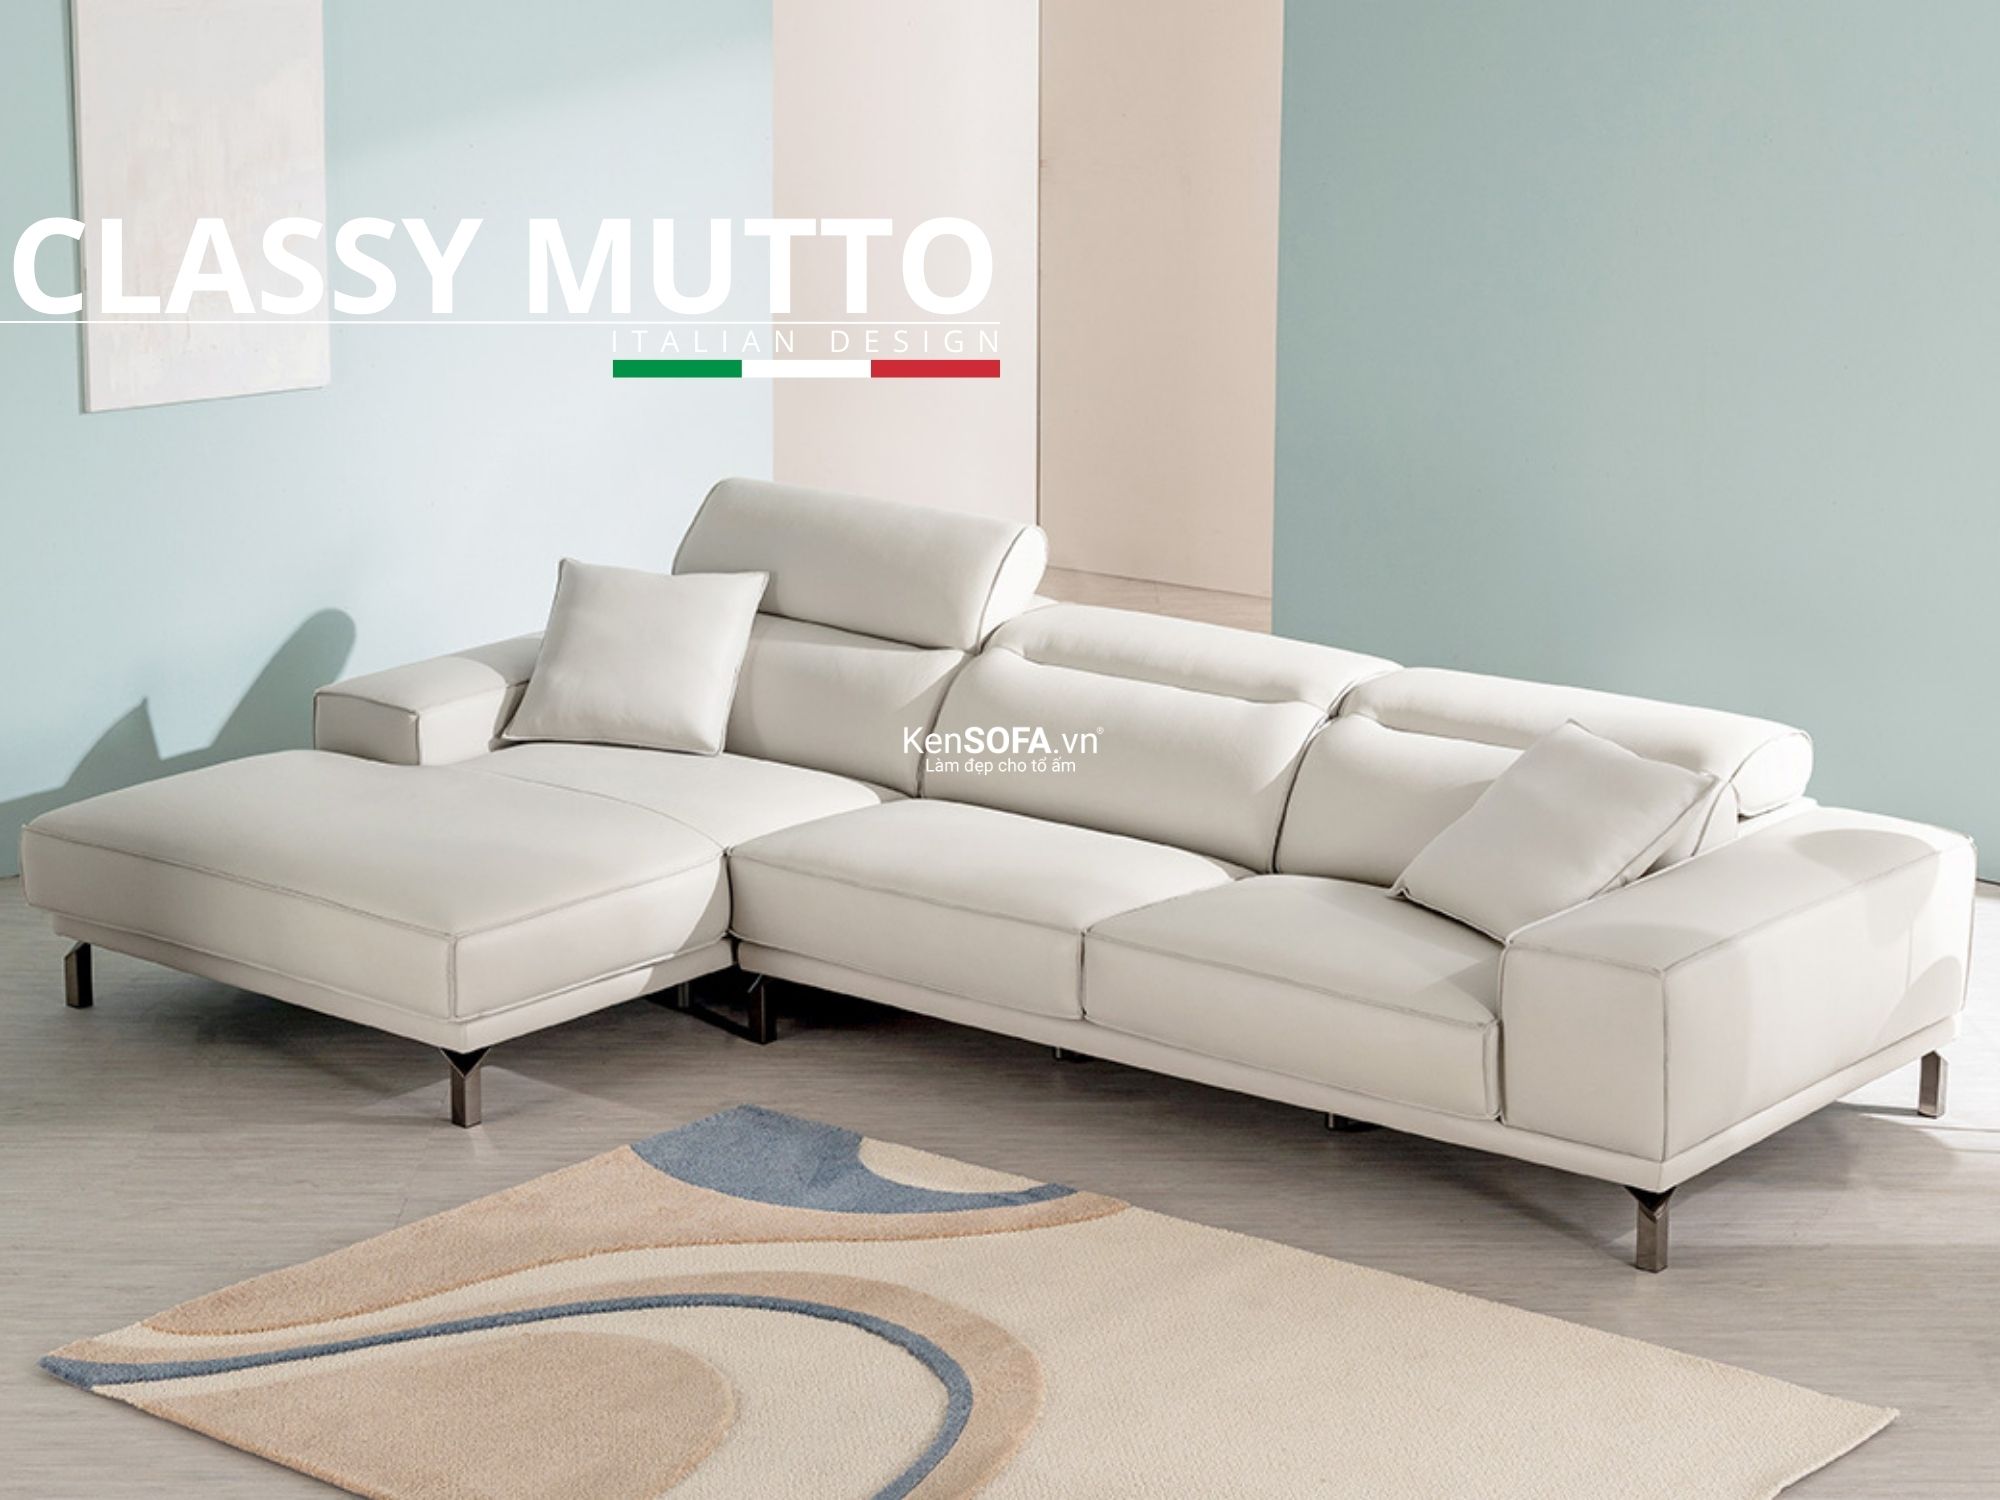 Sofa góc da cao cấp CC27 Classy Mutto da Hàn Quốc nhập khẩu